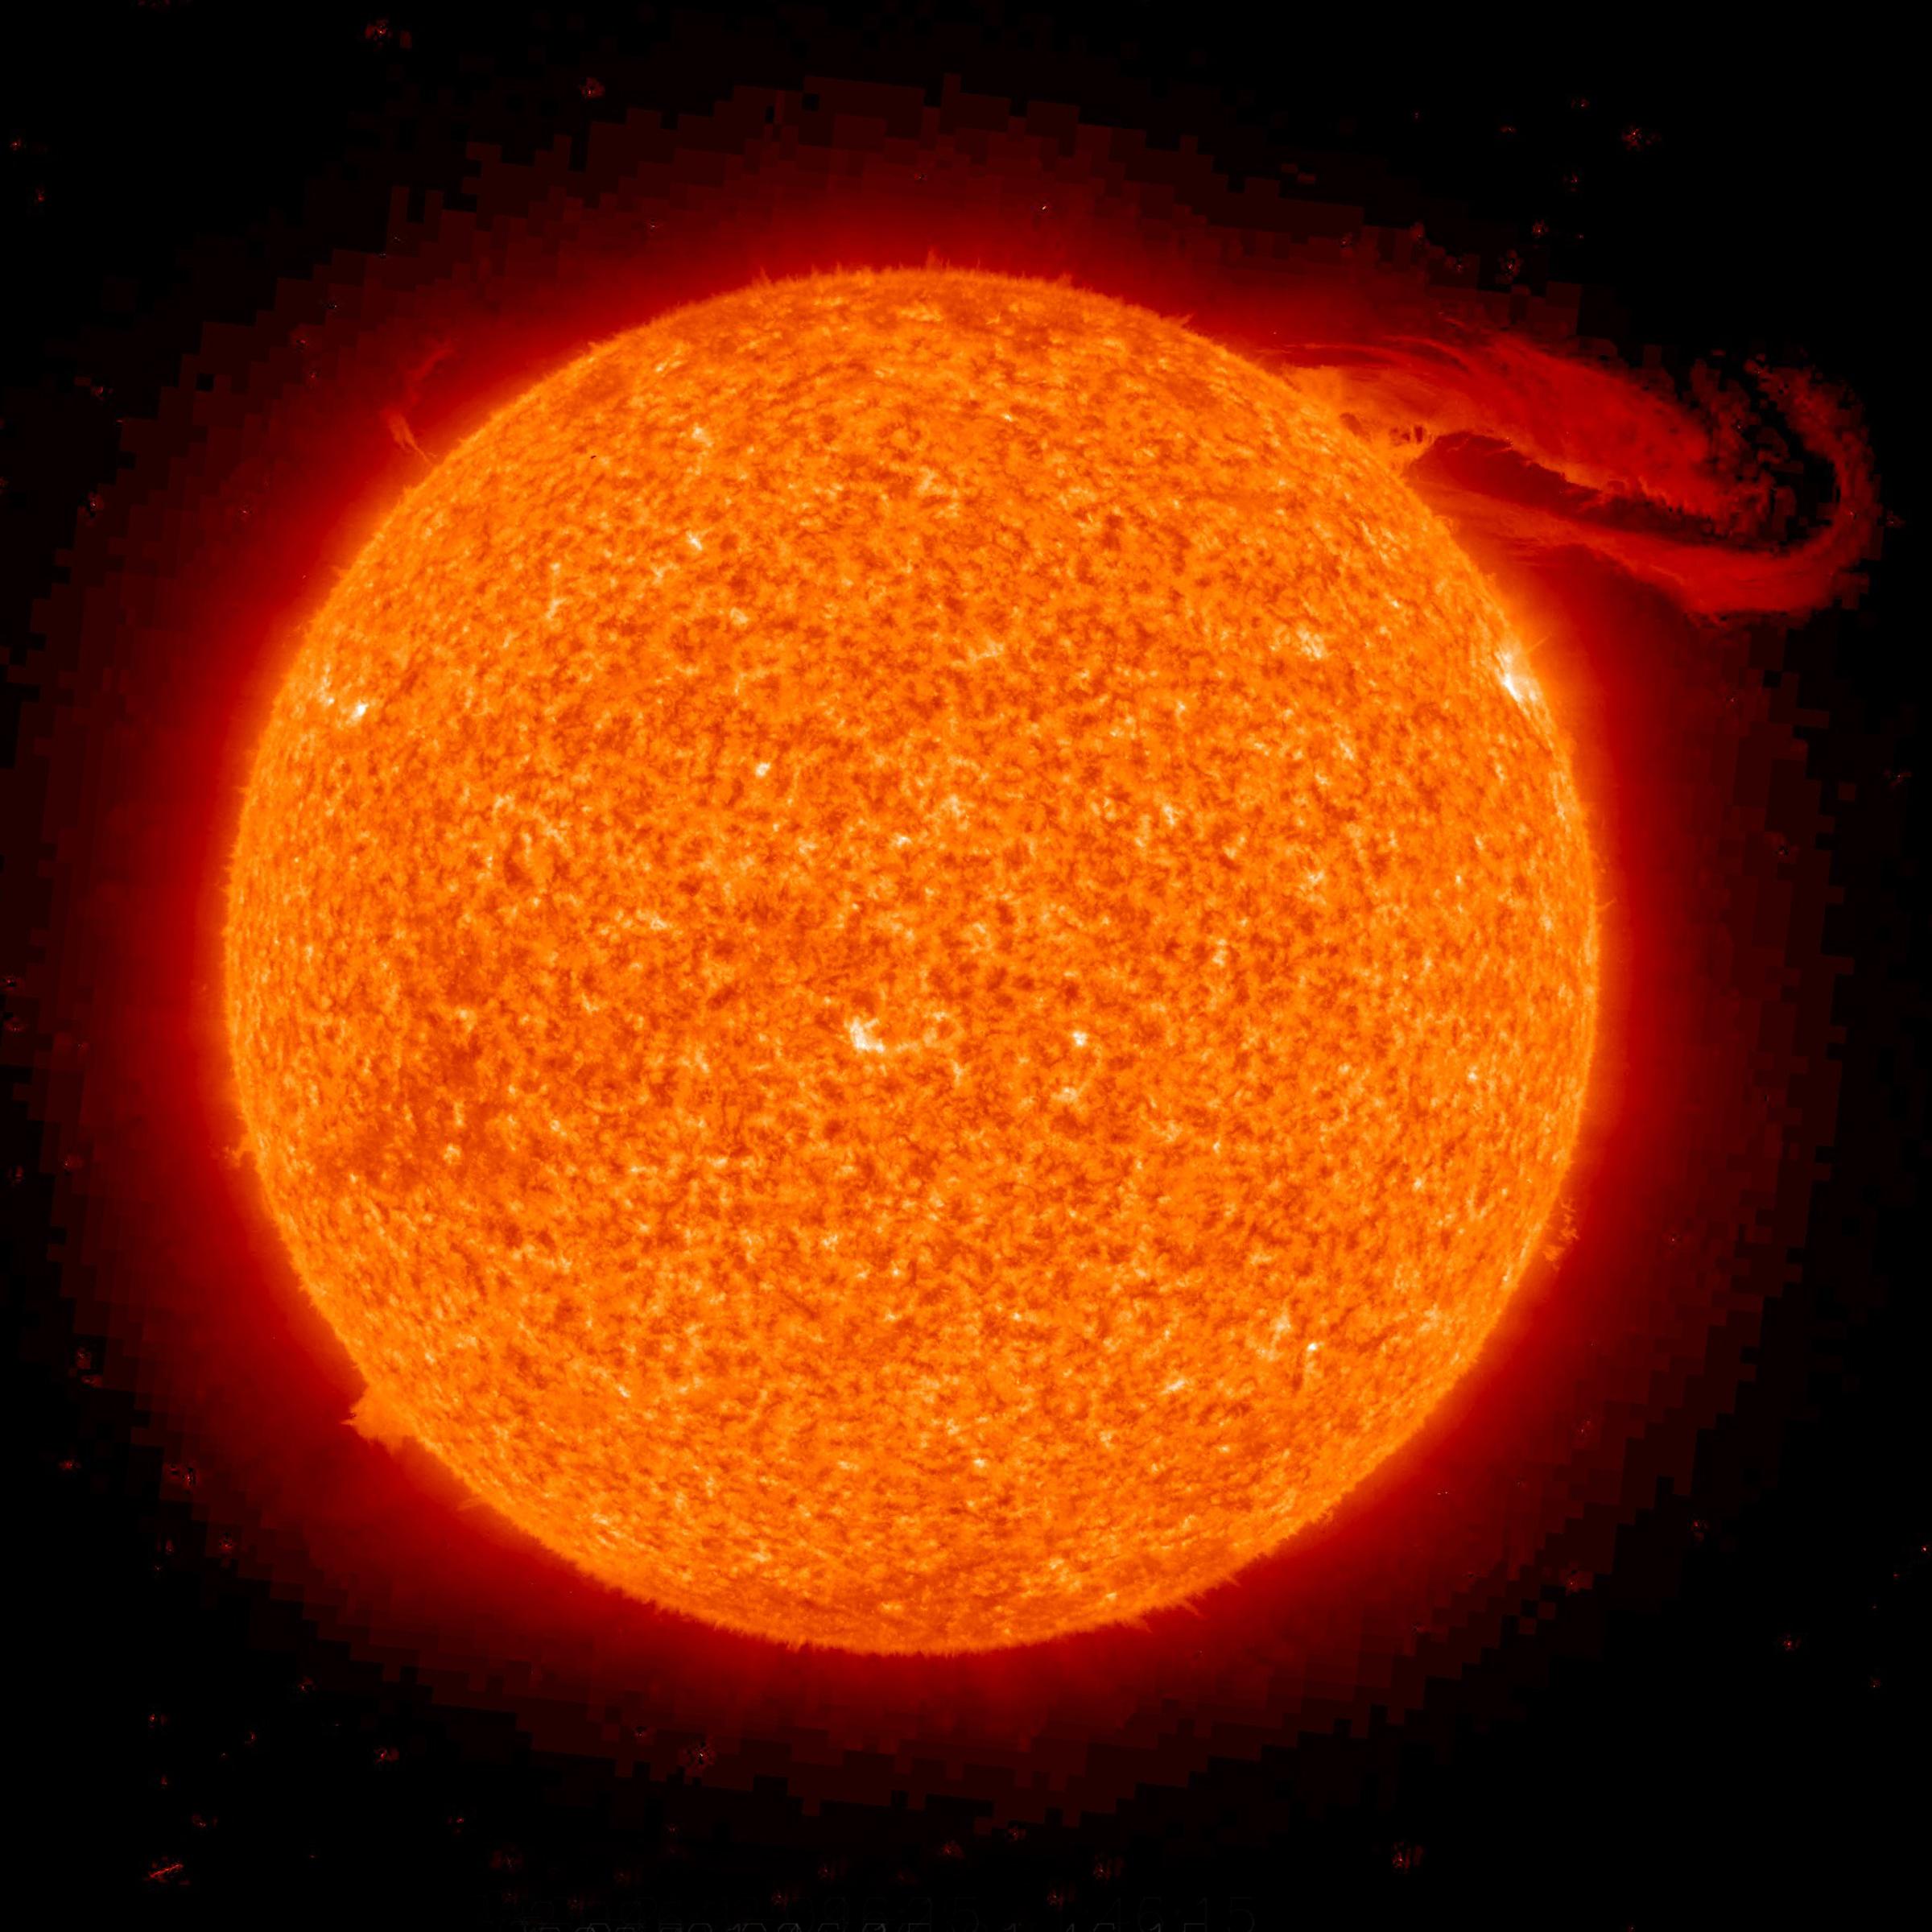 Solar_prominence_from_STEREO_spacecraft_September_29,_2008.jpg